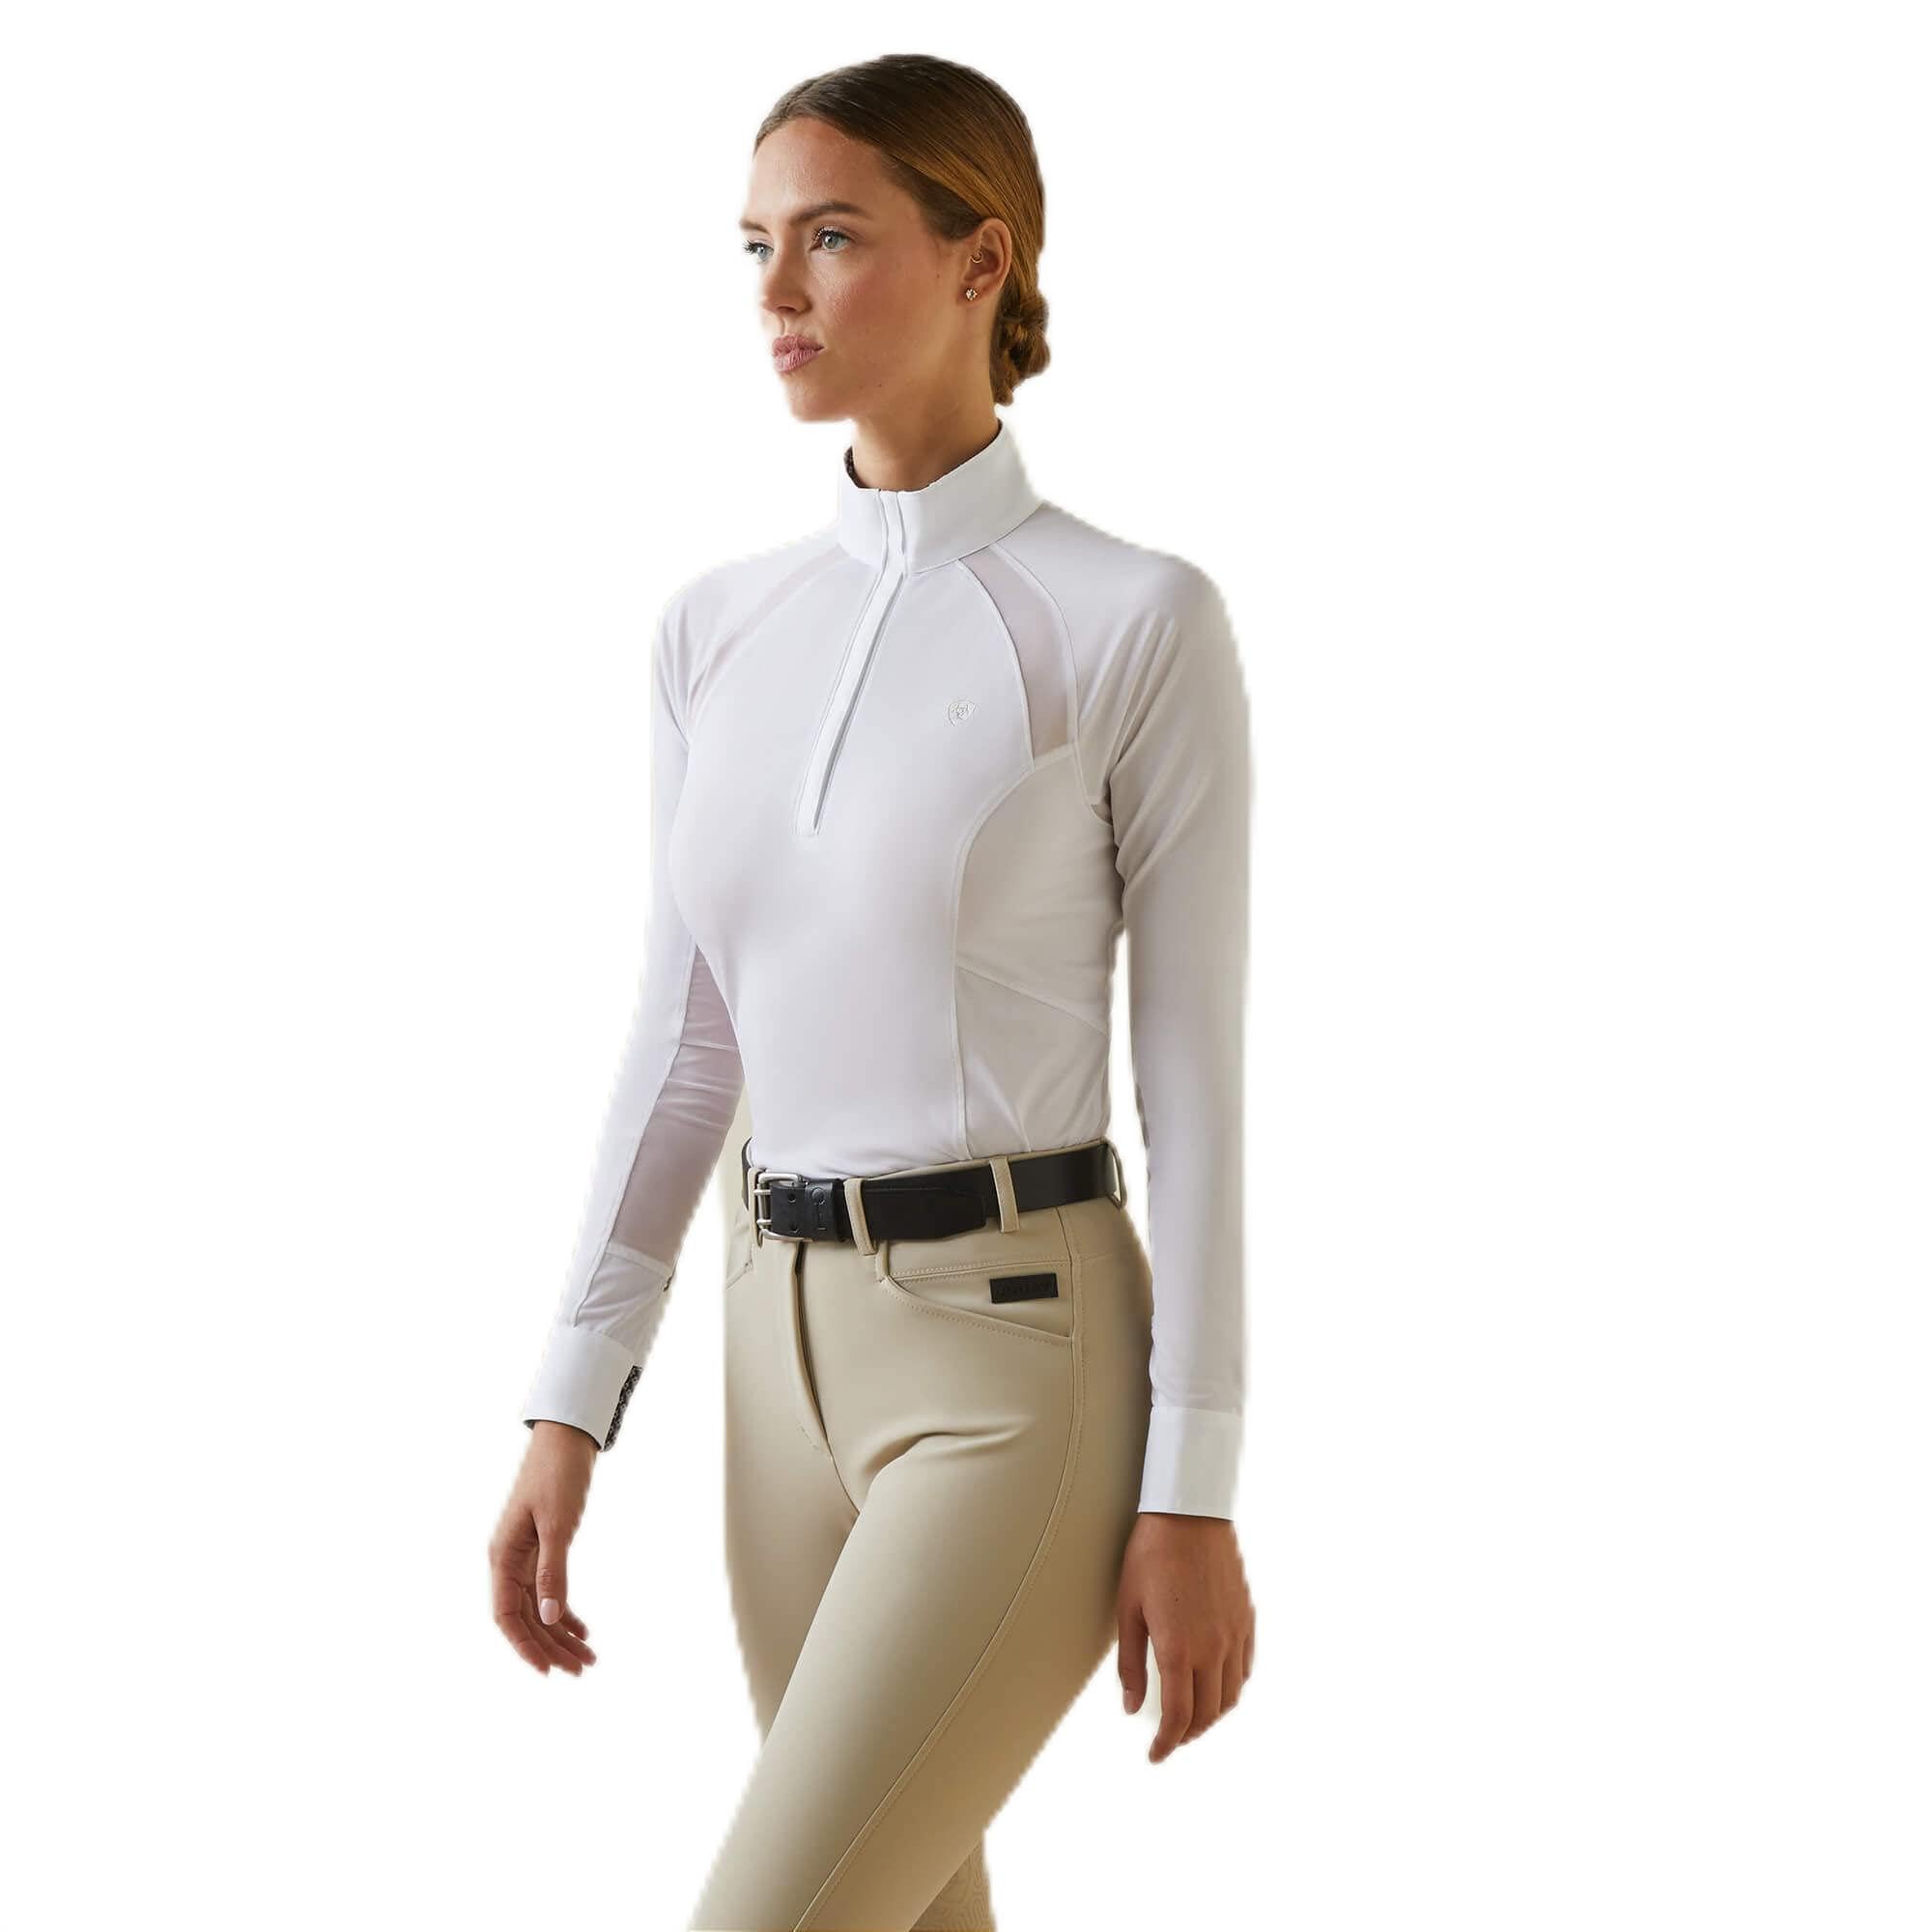 Ariat Female Sunstopper Pro 2.0 Show Shirt White/Oscar Small